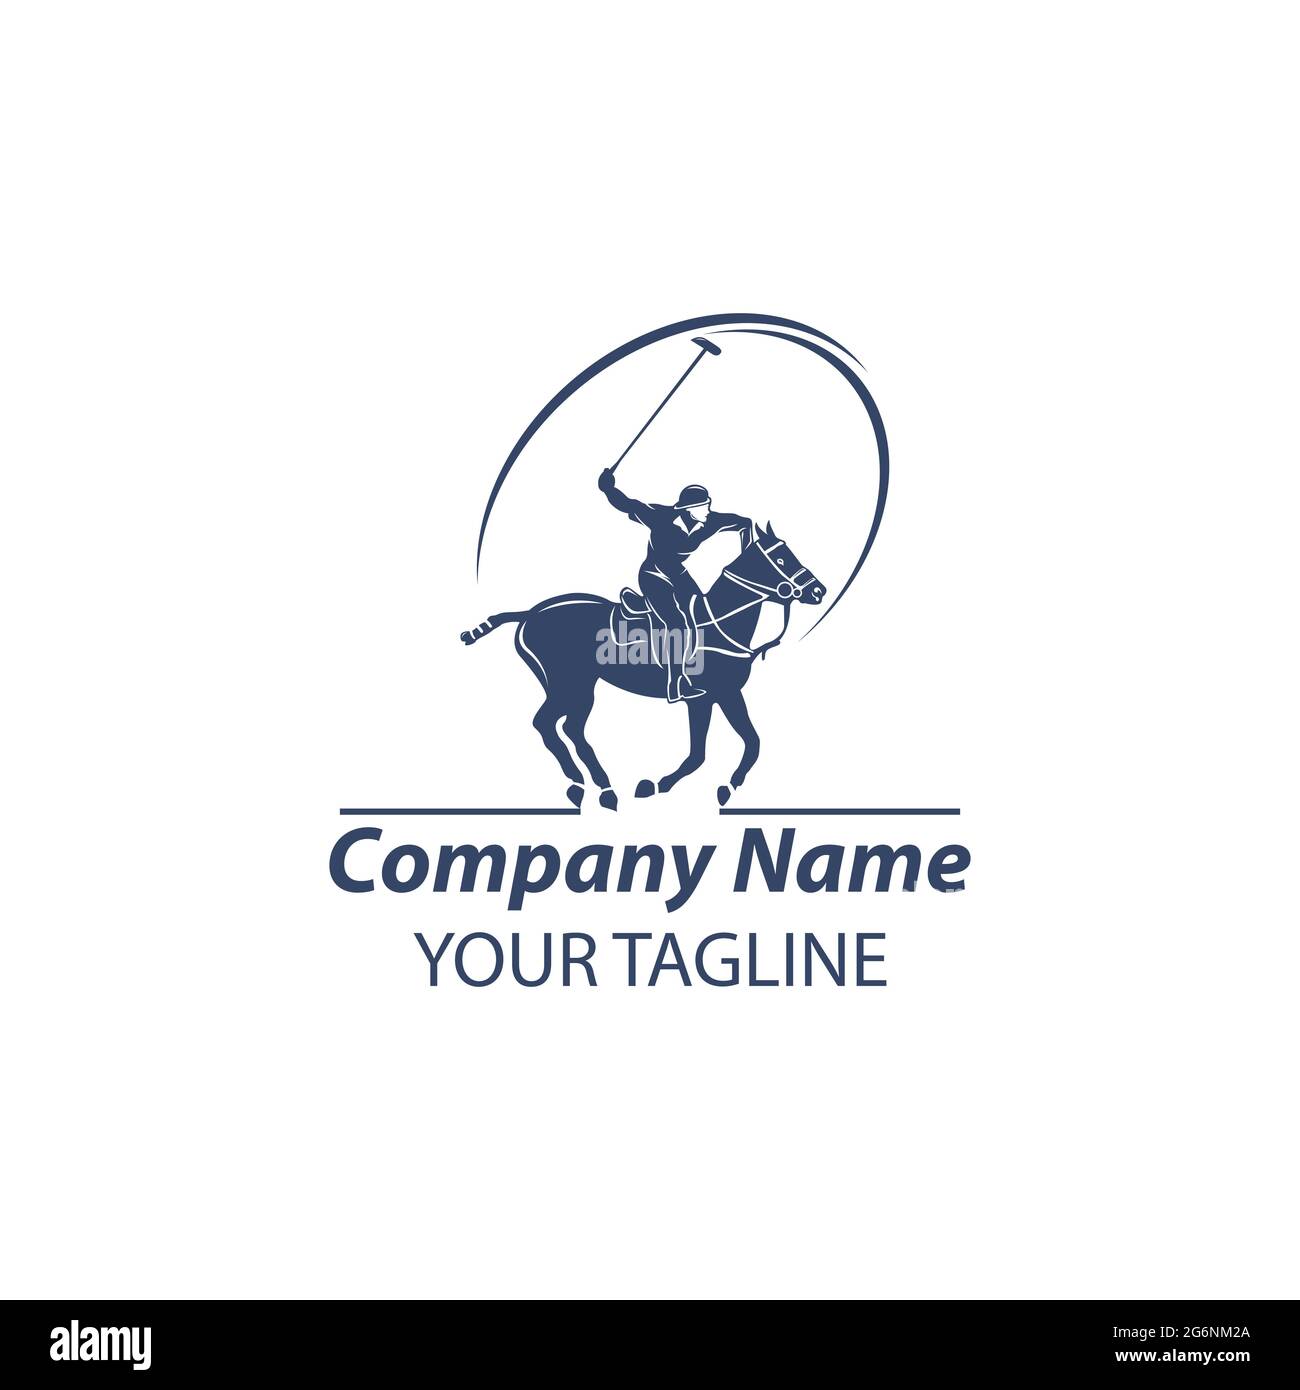 Polo horse Banque d'images vectorielles - Alamy